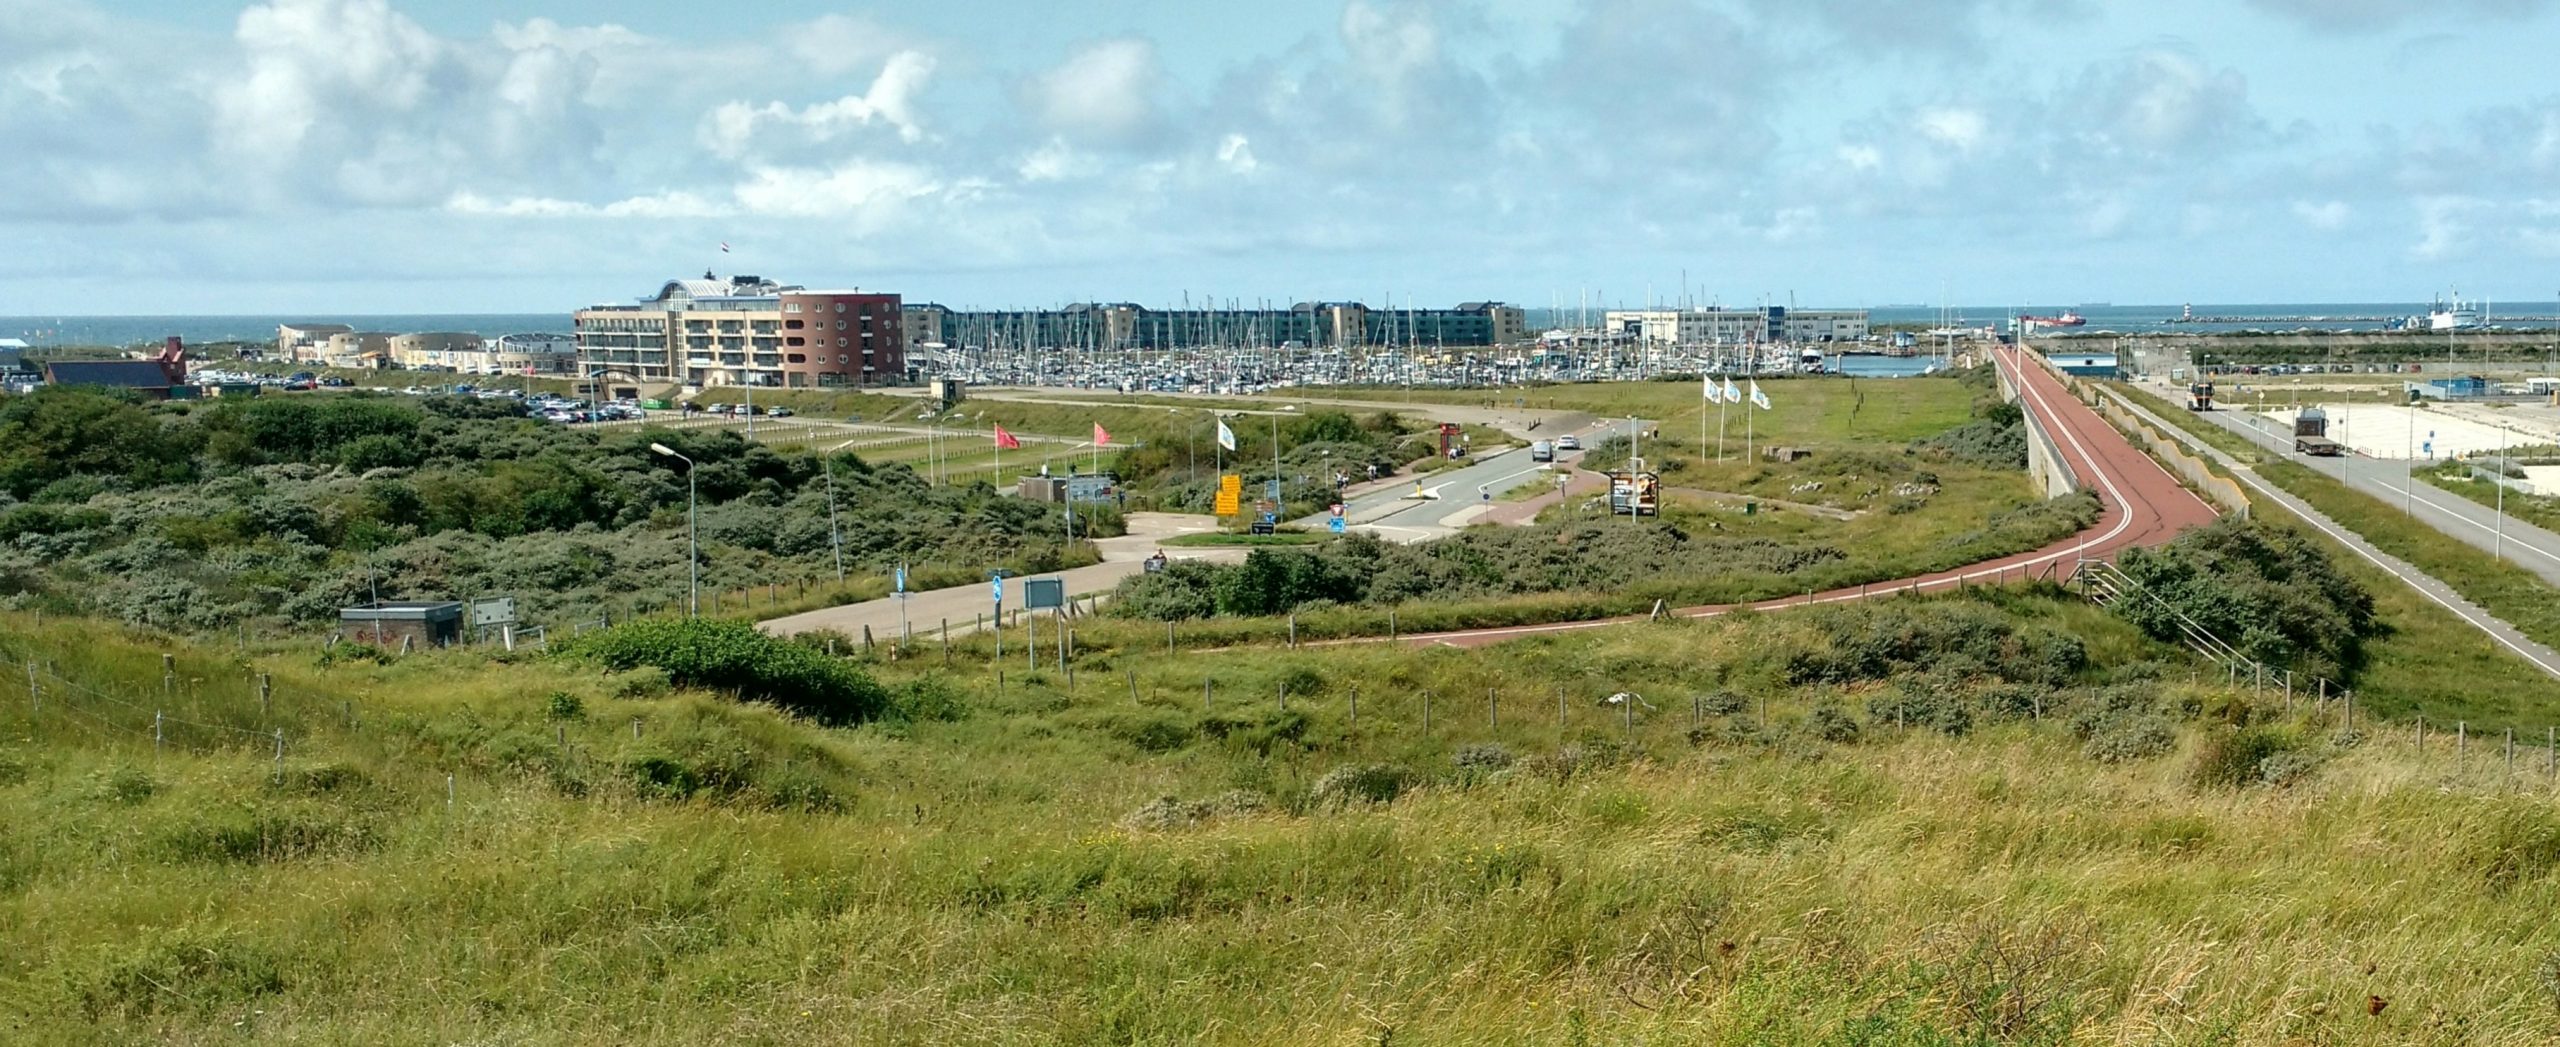 De winnende foto met een uitzicht van de kust van IJmuiden van de familie Schouwenburg